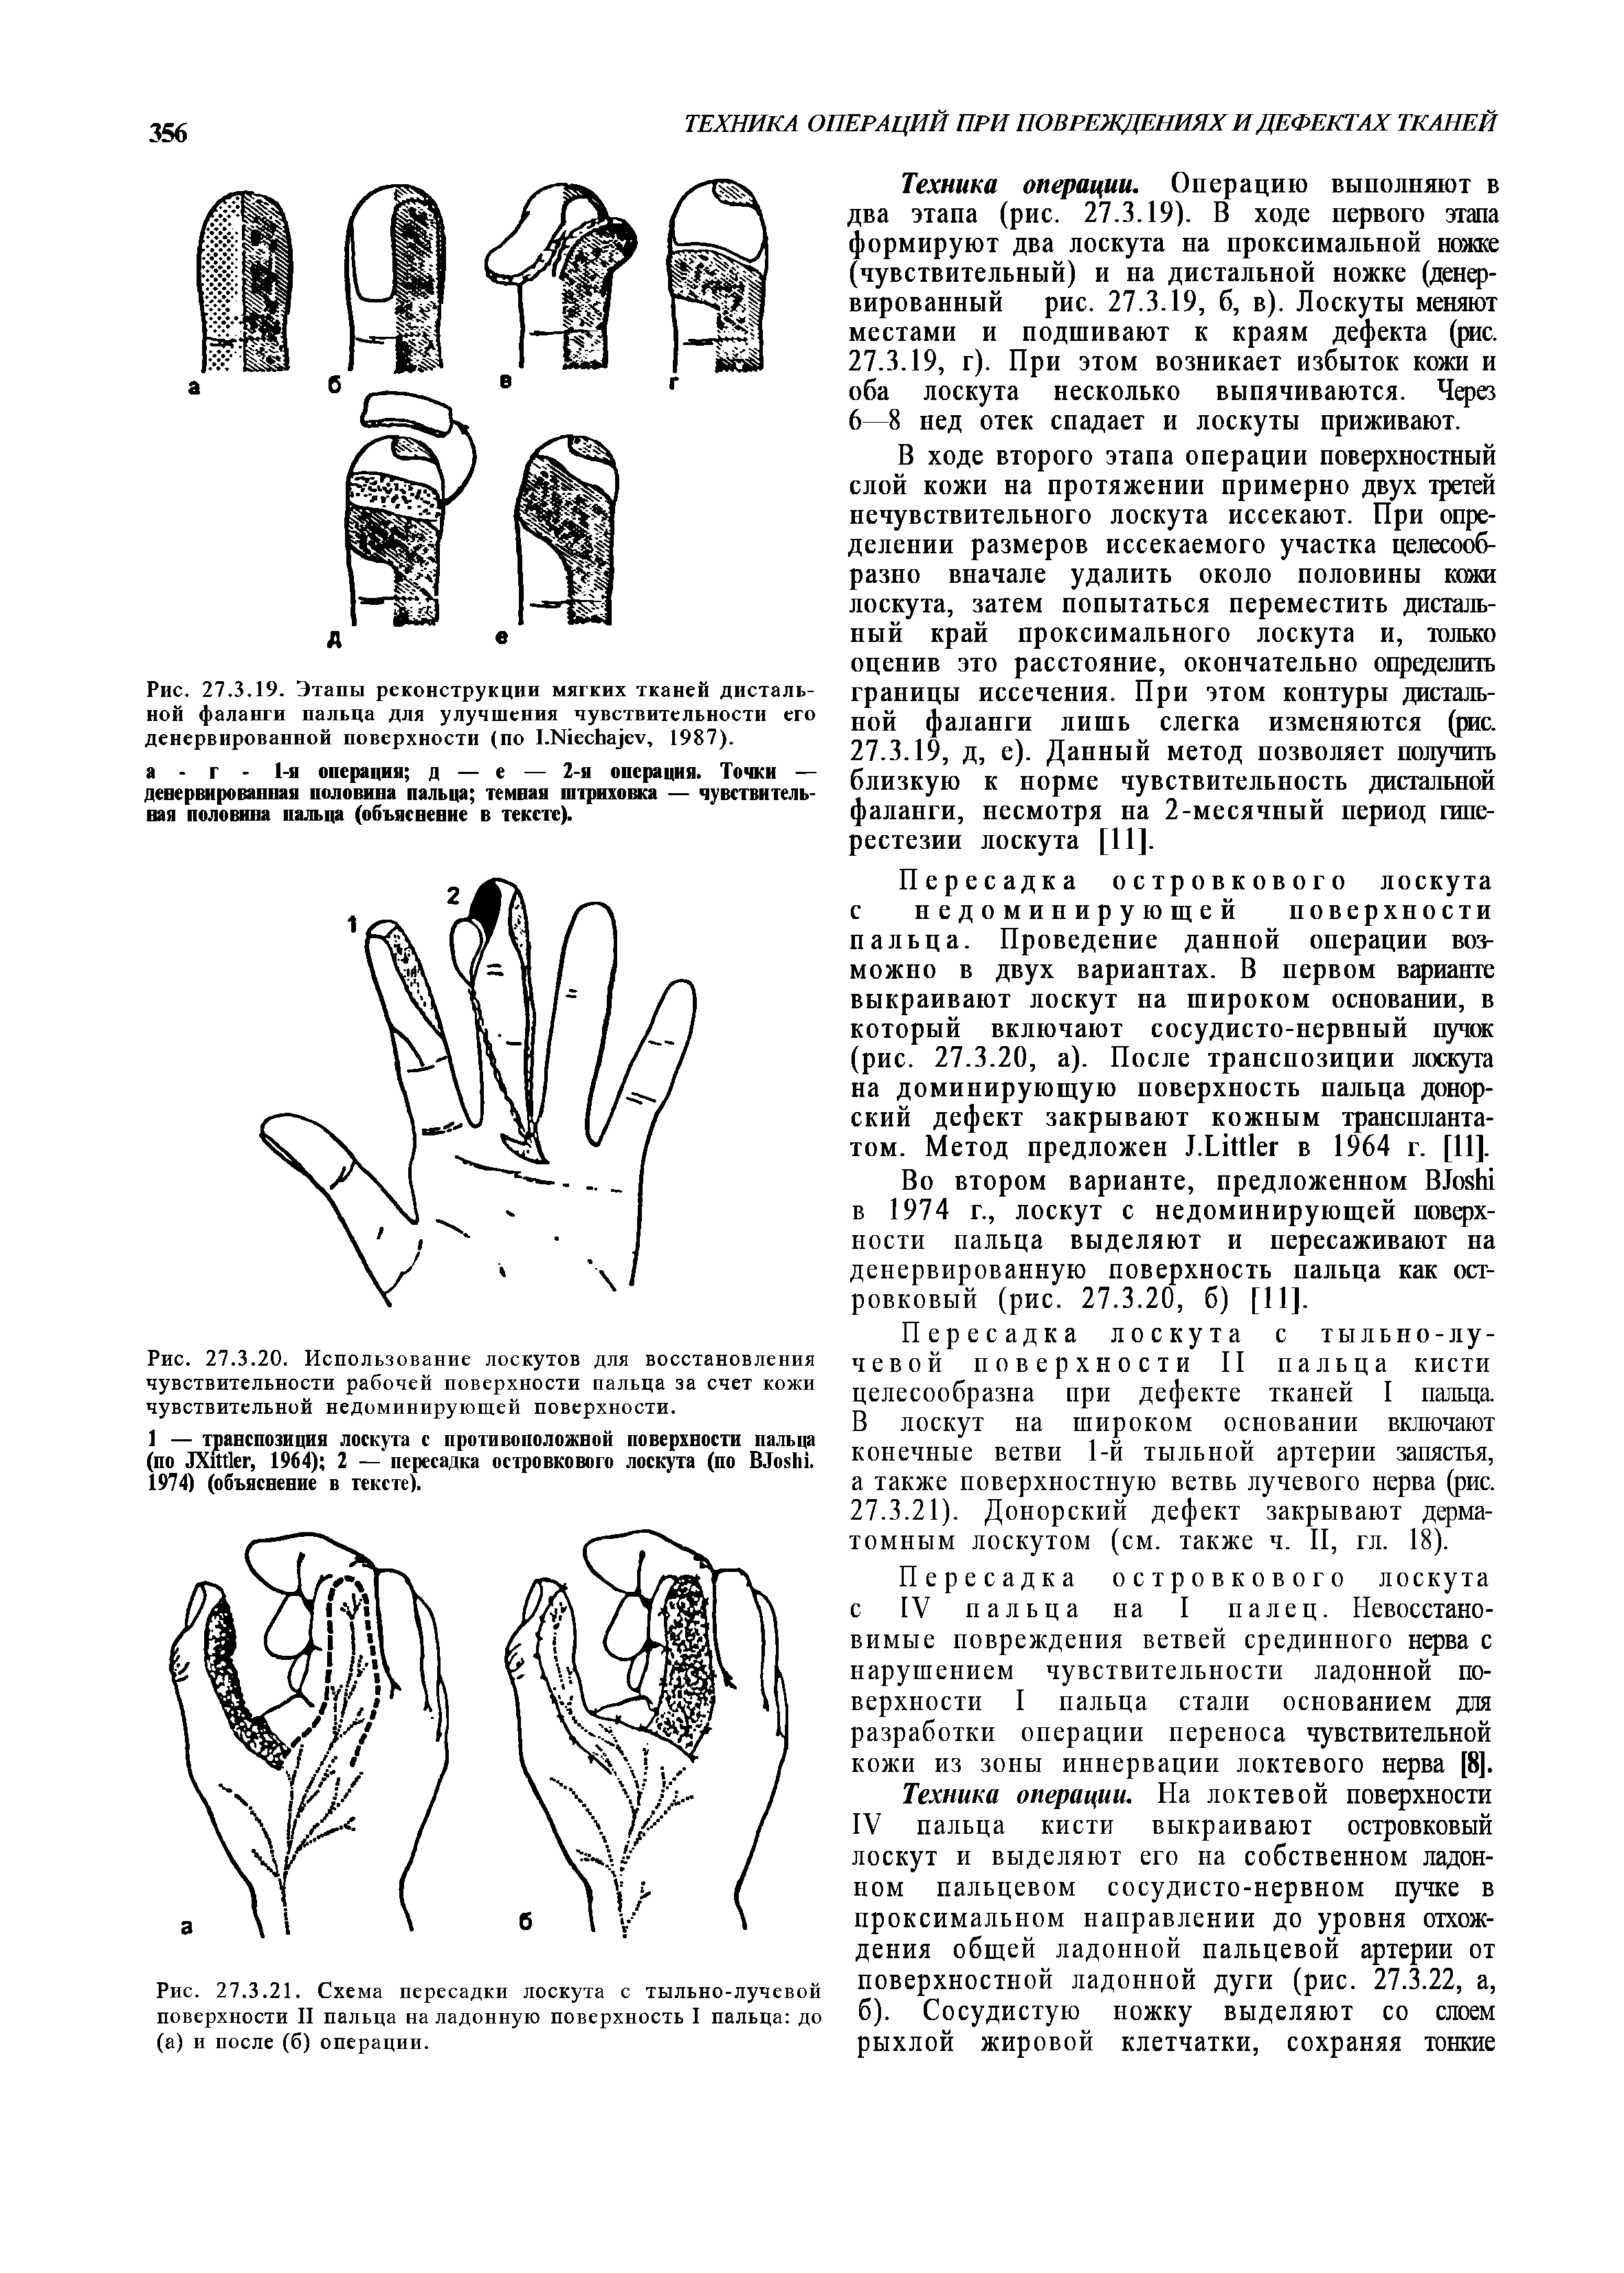 Рис. 27.3.21. Схема пересадки лоскута с тыльно-лучевой поверхности II пальца на ладонную поверхность I пальца до (а) и после (б) операции.